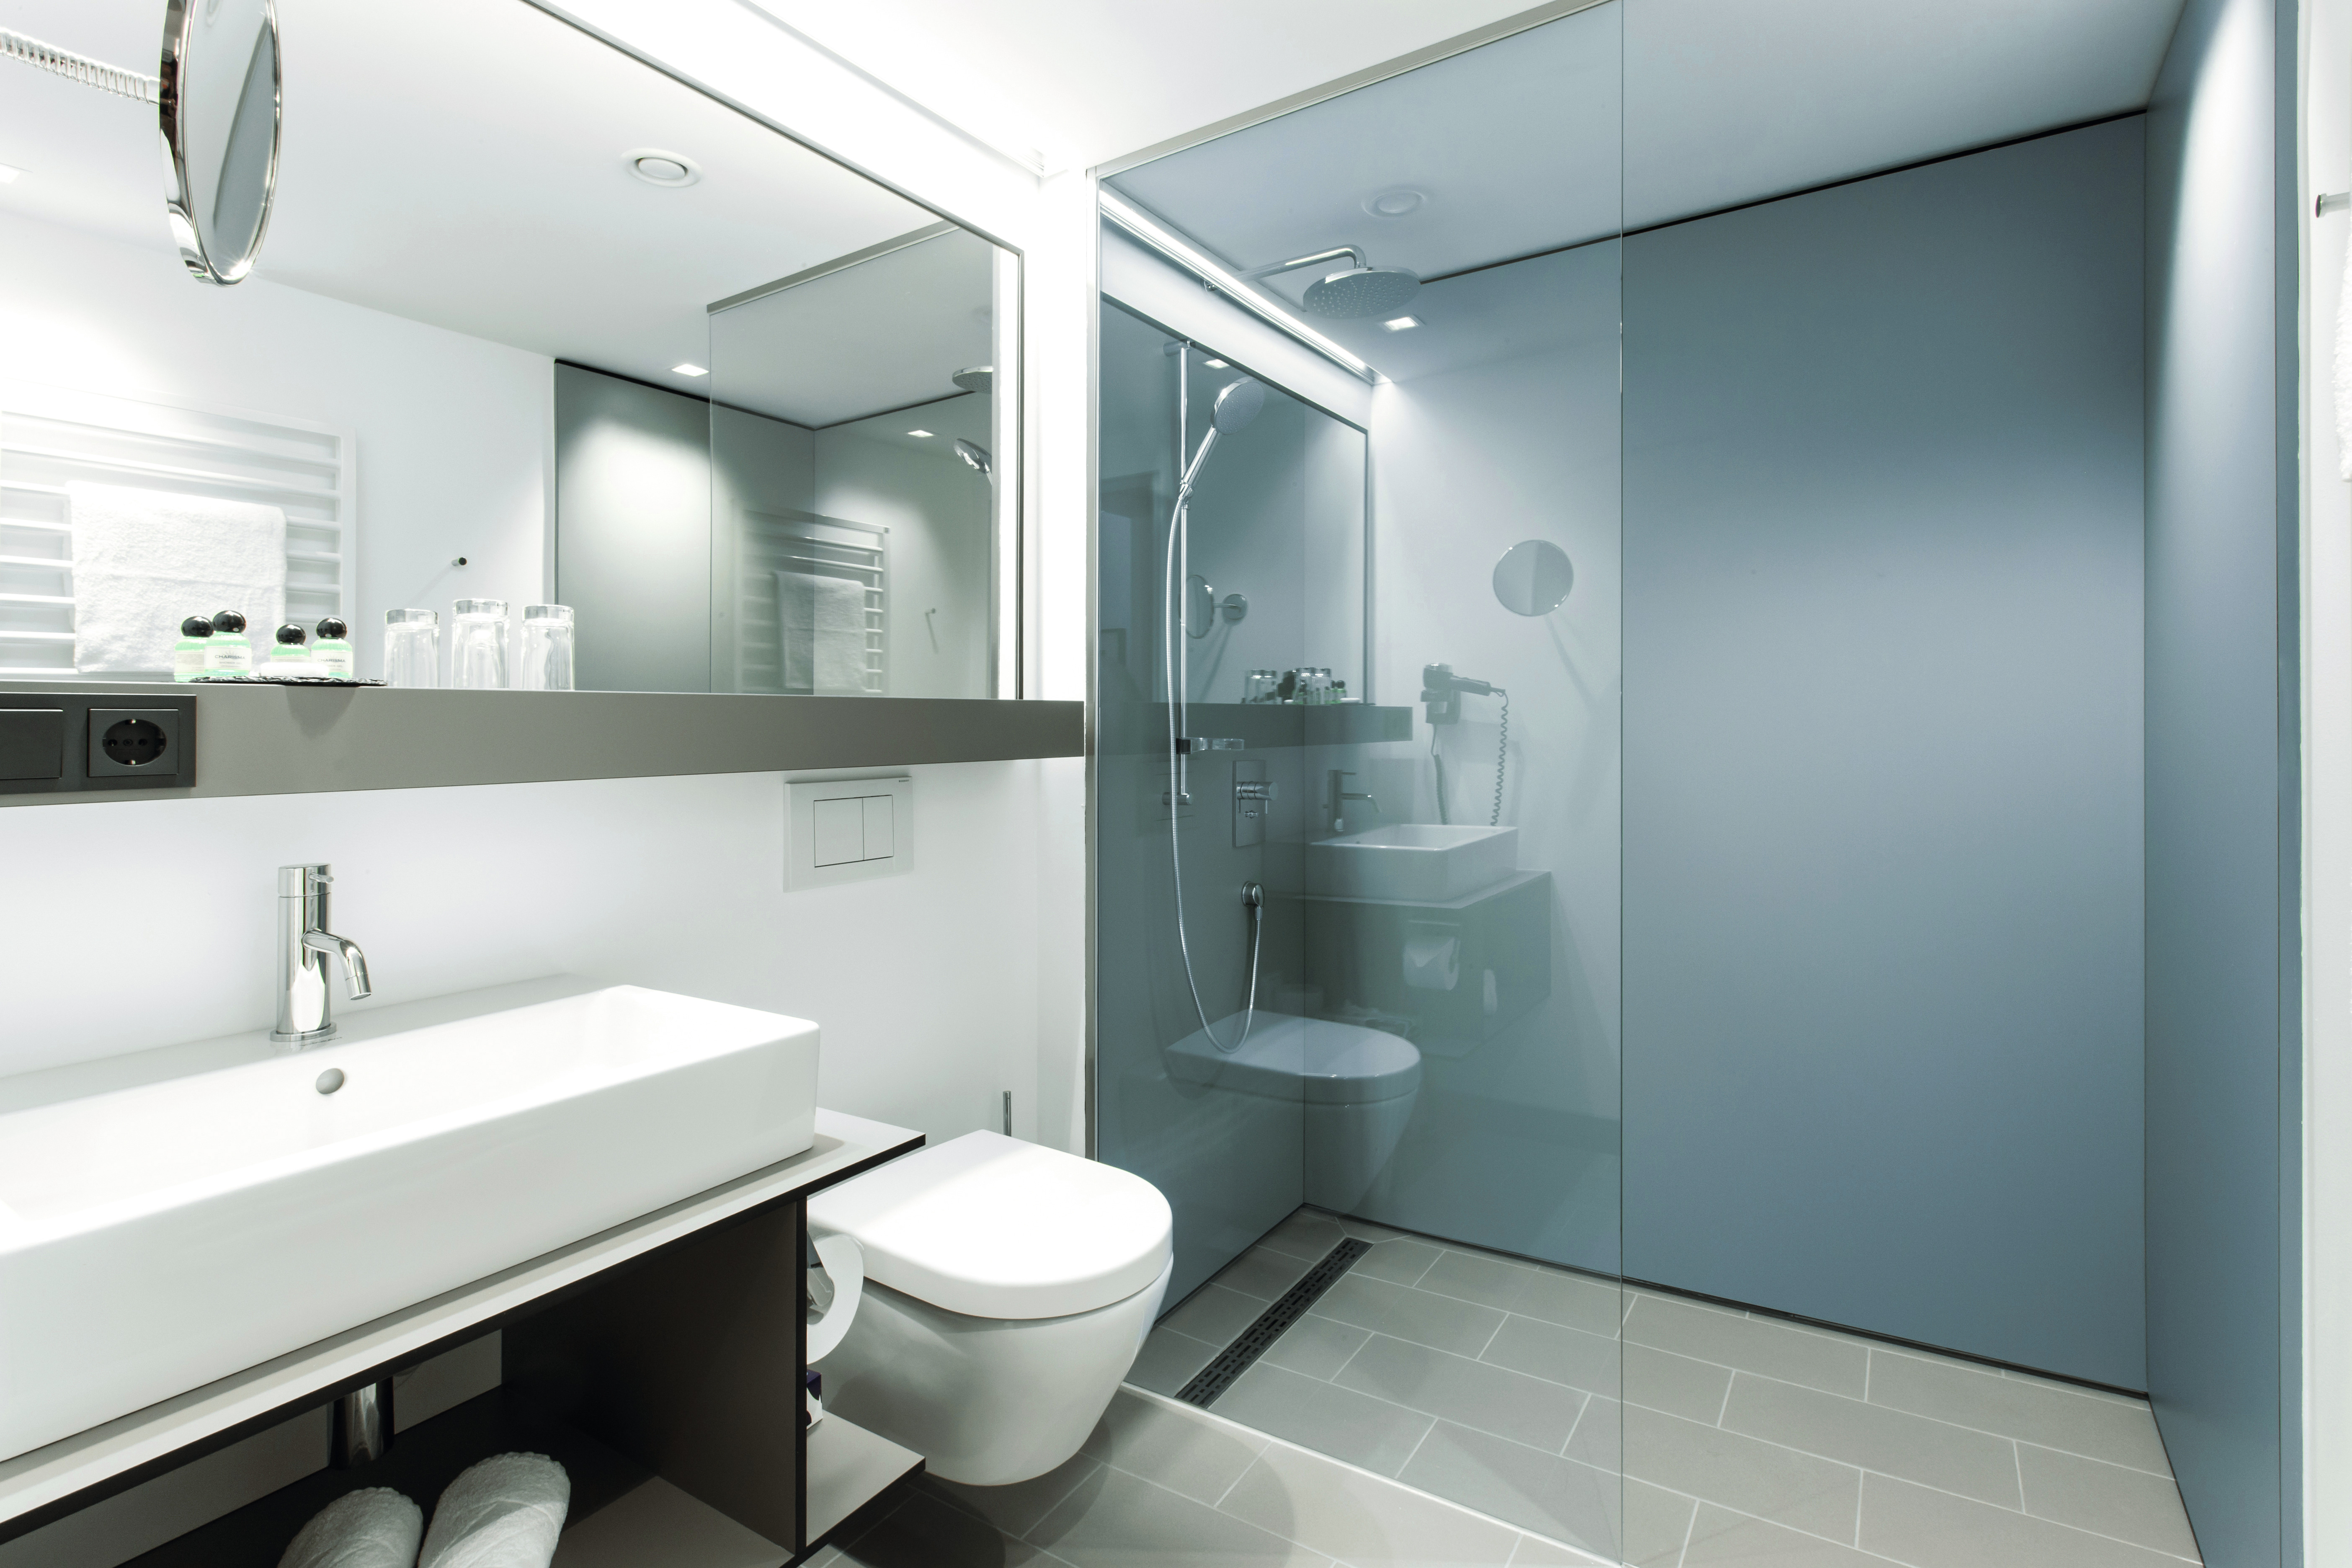 Łazienki wyposażone w laminaty kompaktowe firmy EGGER U540.